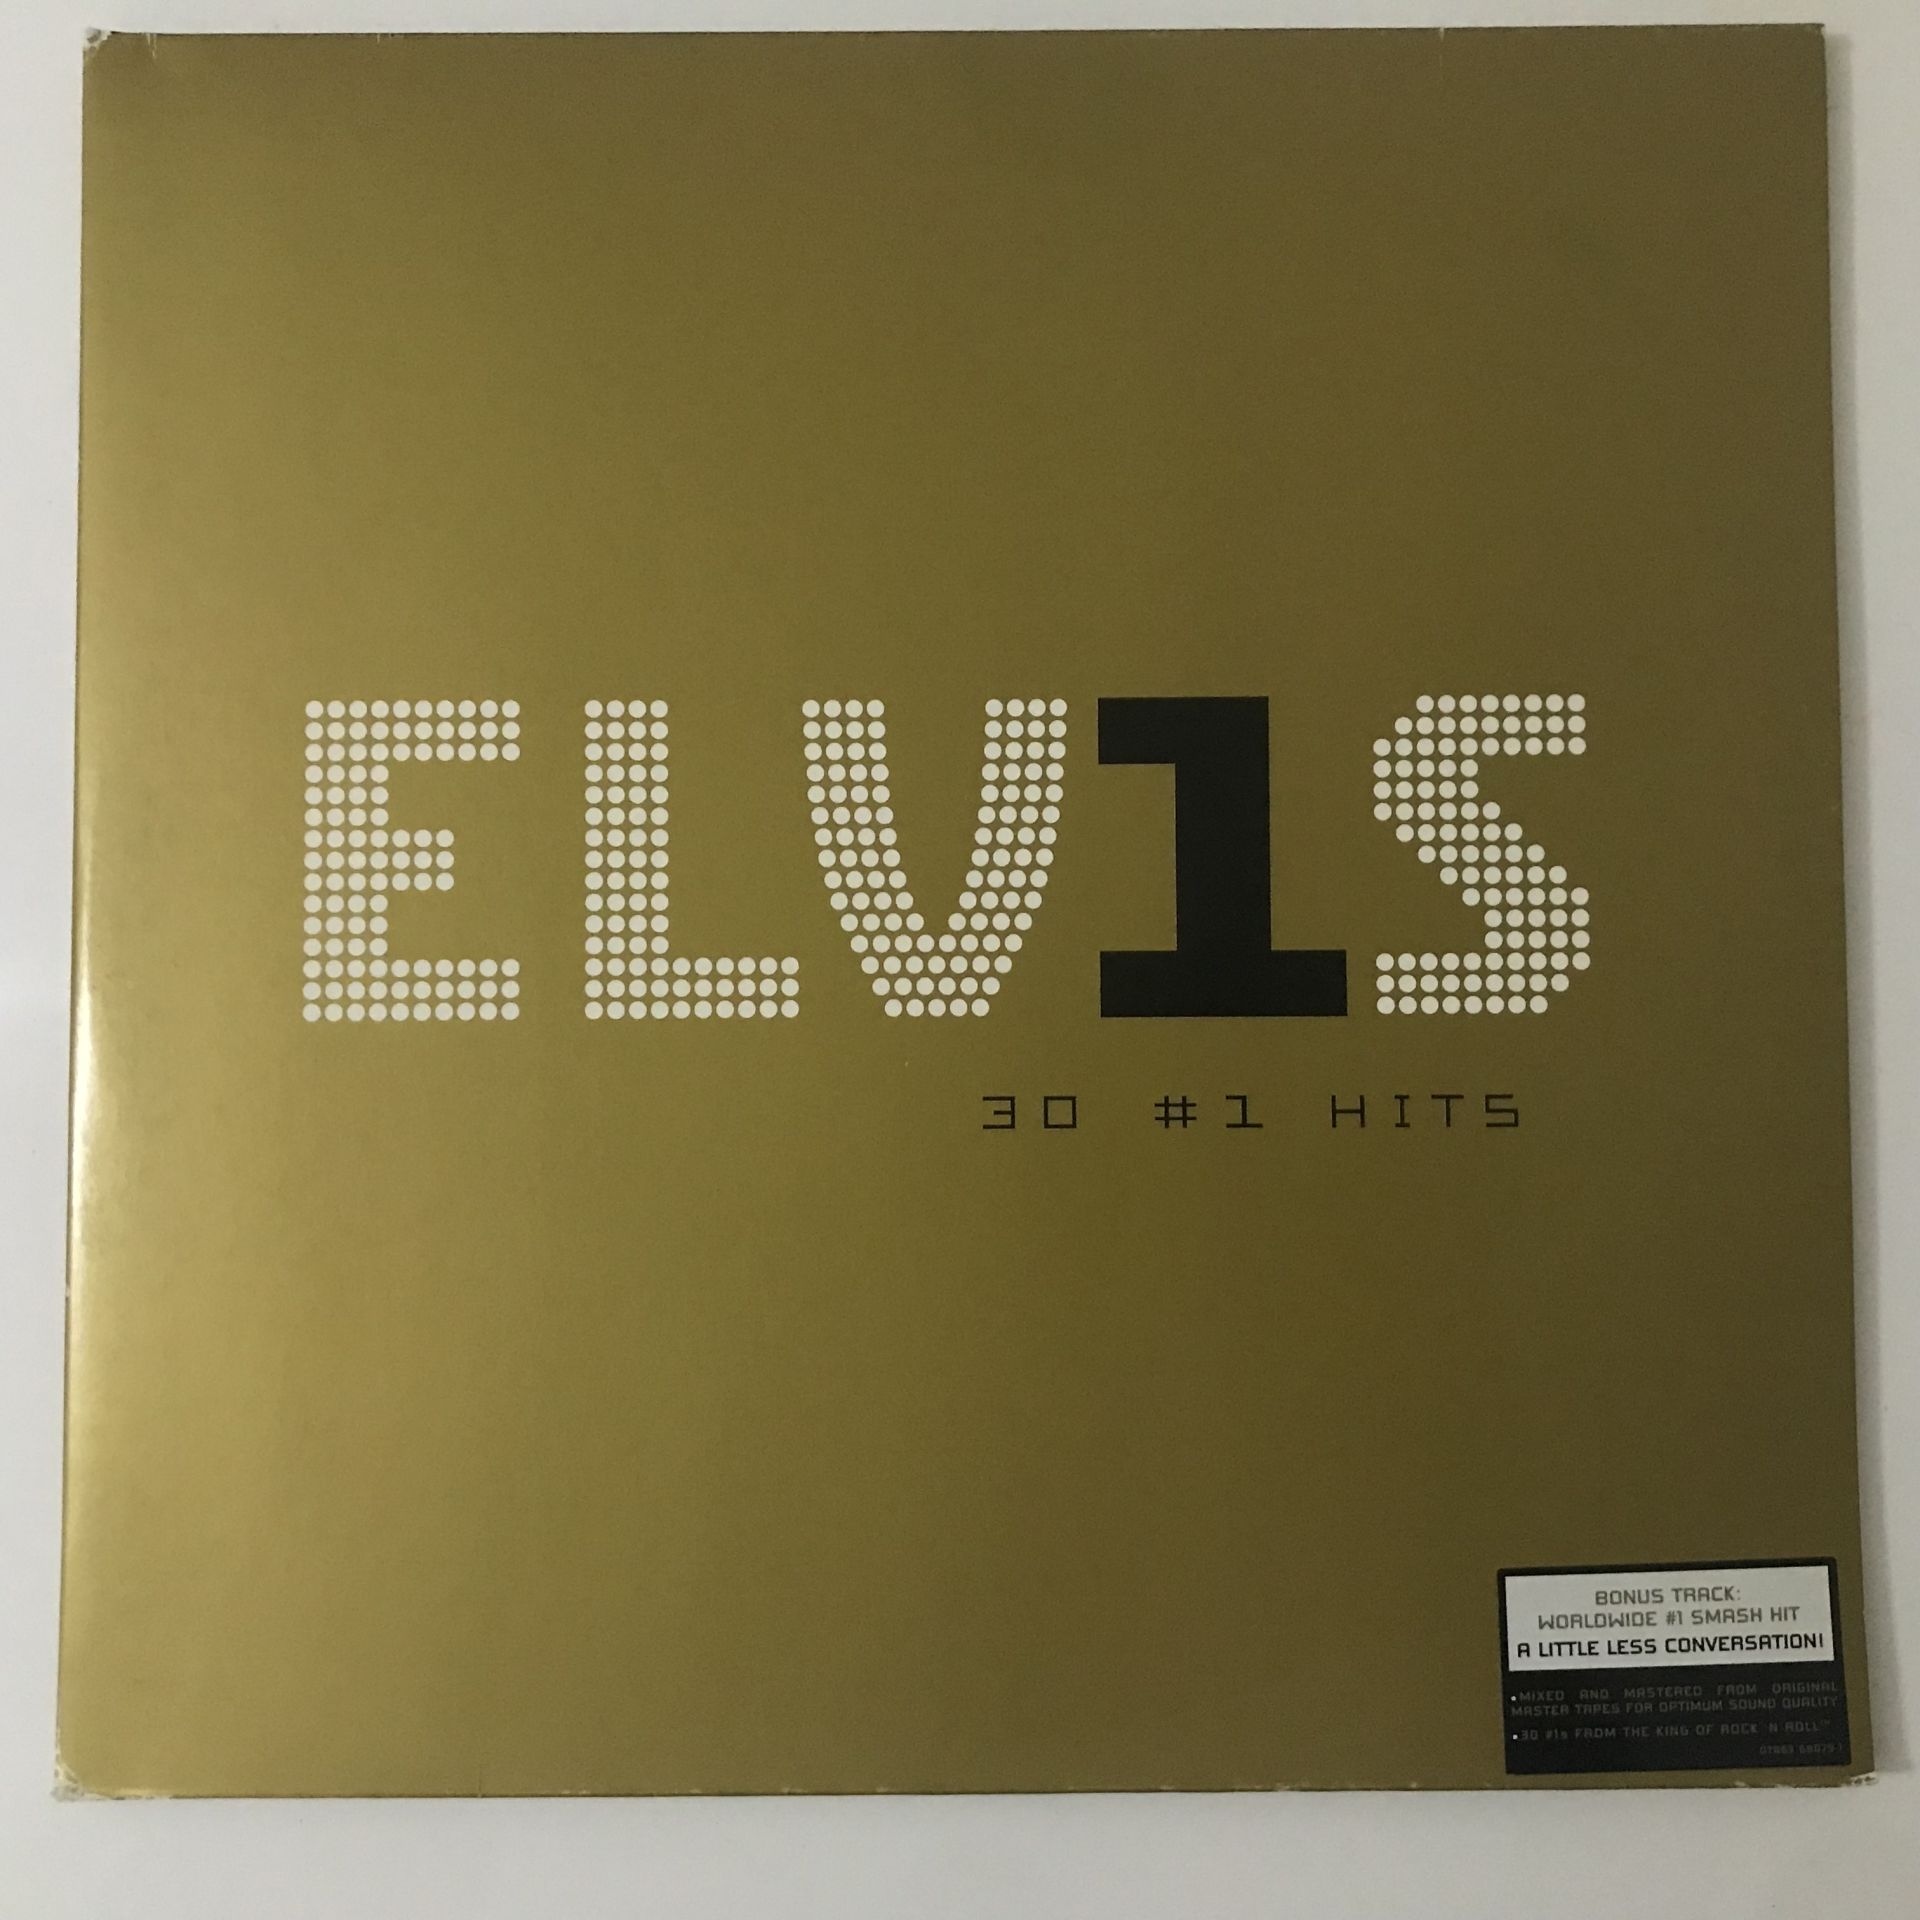 Elvis Presley – ELV1S 30 #1 Hits 2 LP